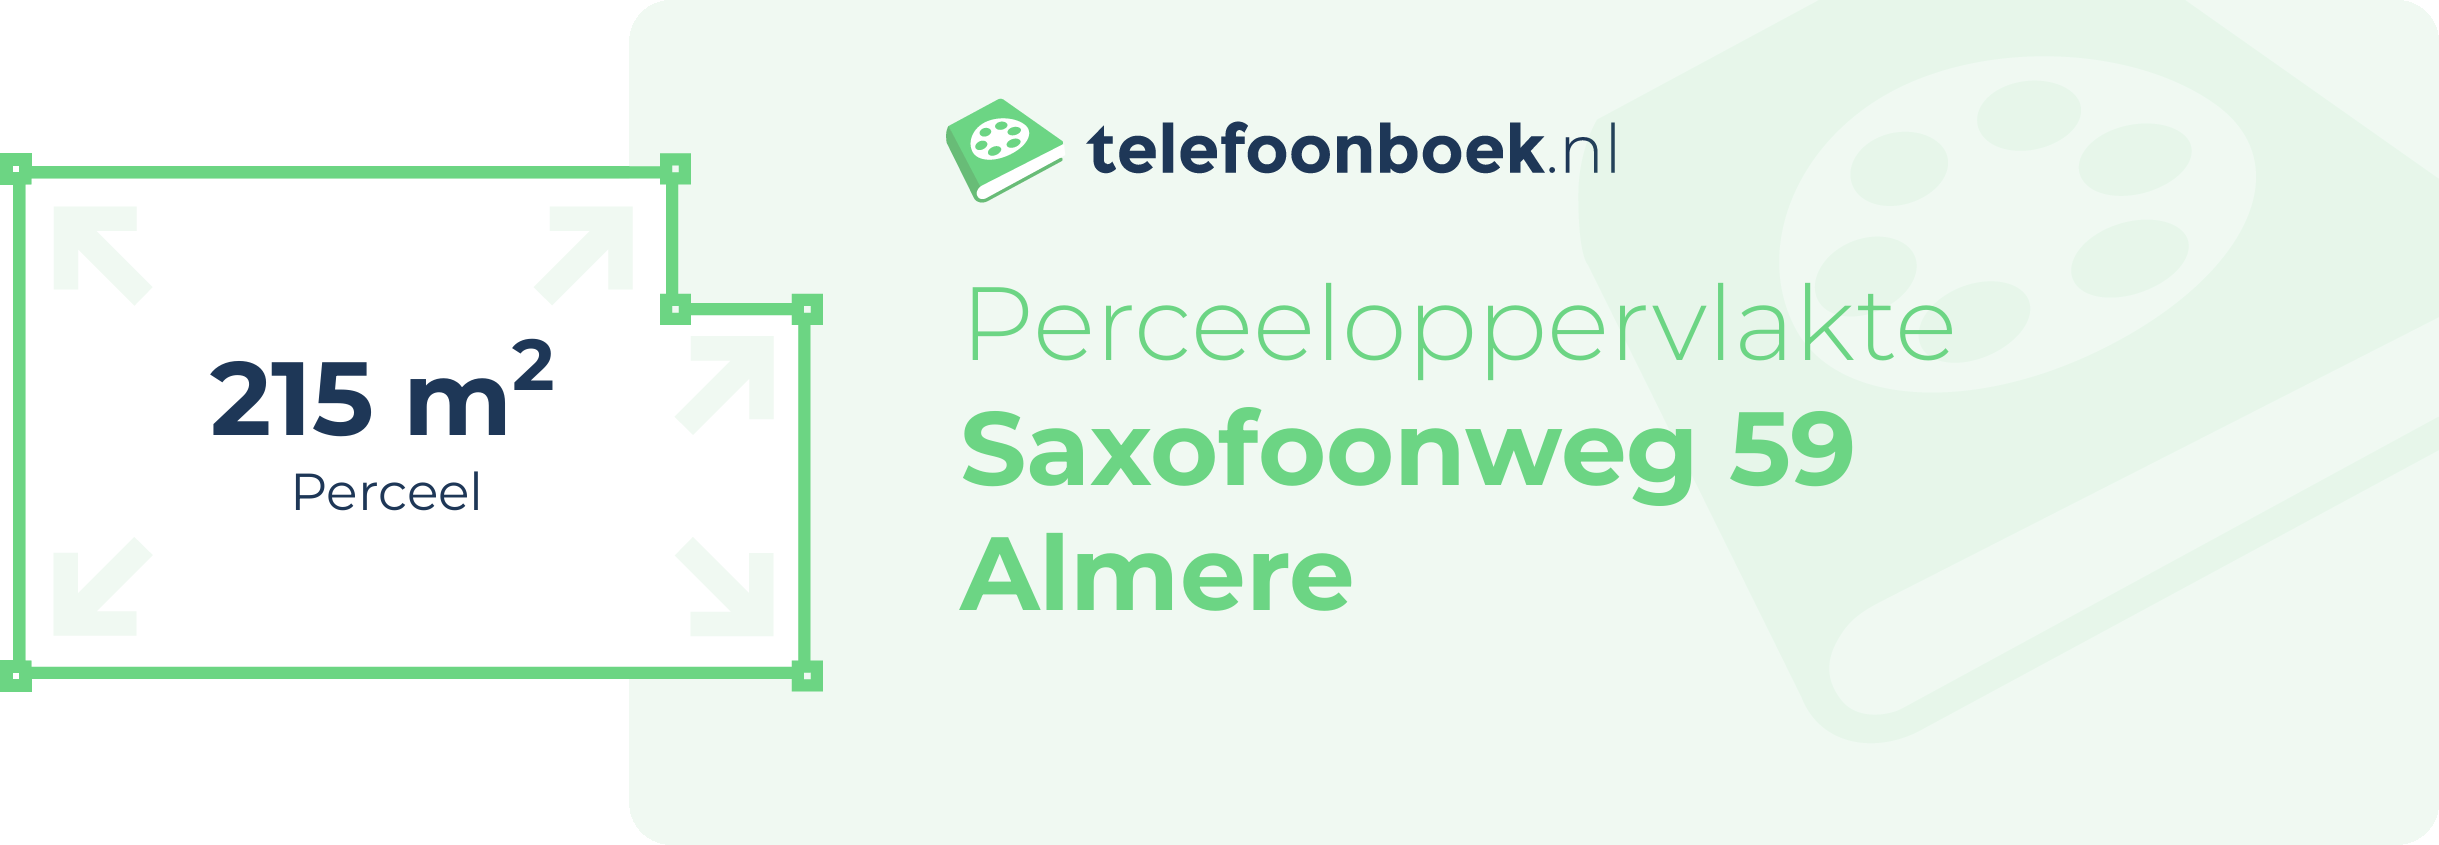 Perceeloppervlakte Saxofoonweg 59 Almere